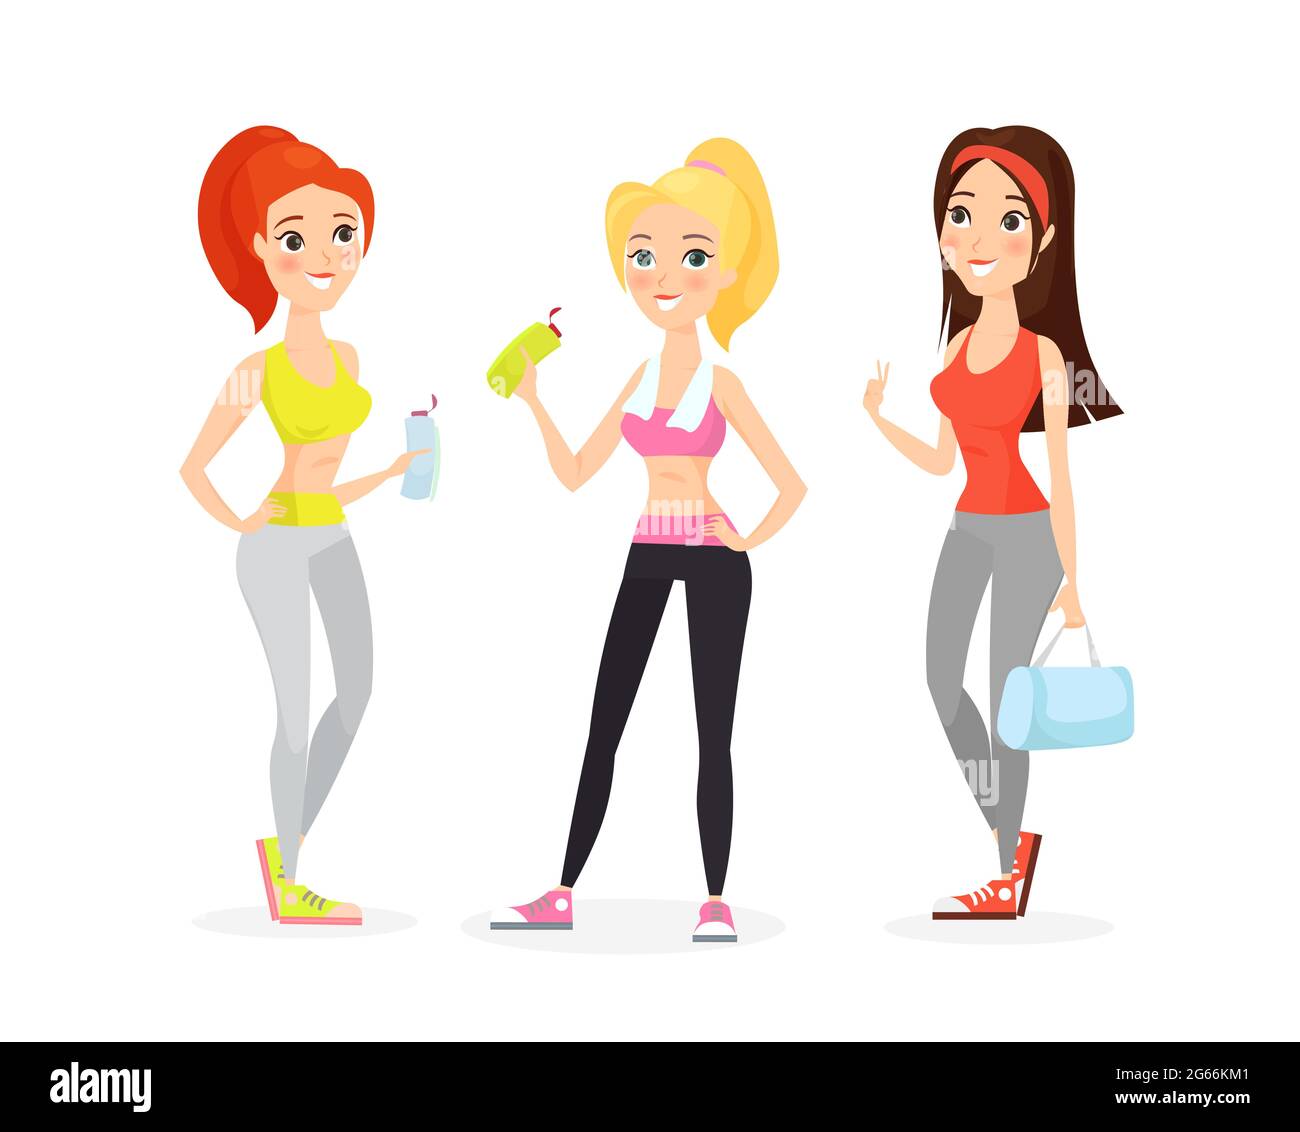 Ilustración vectorial de mujeres jóvenes en ropa deportiva, niñas